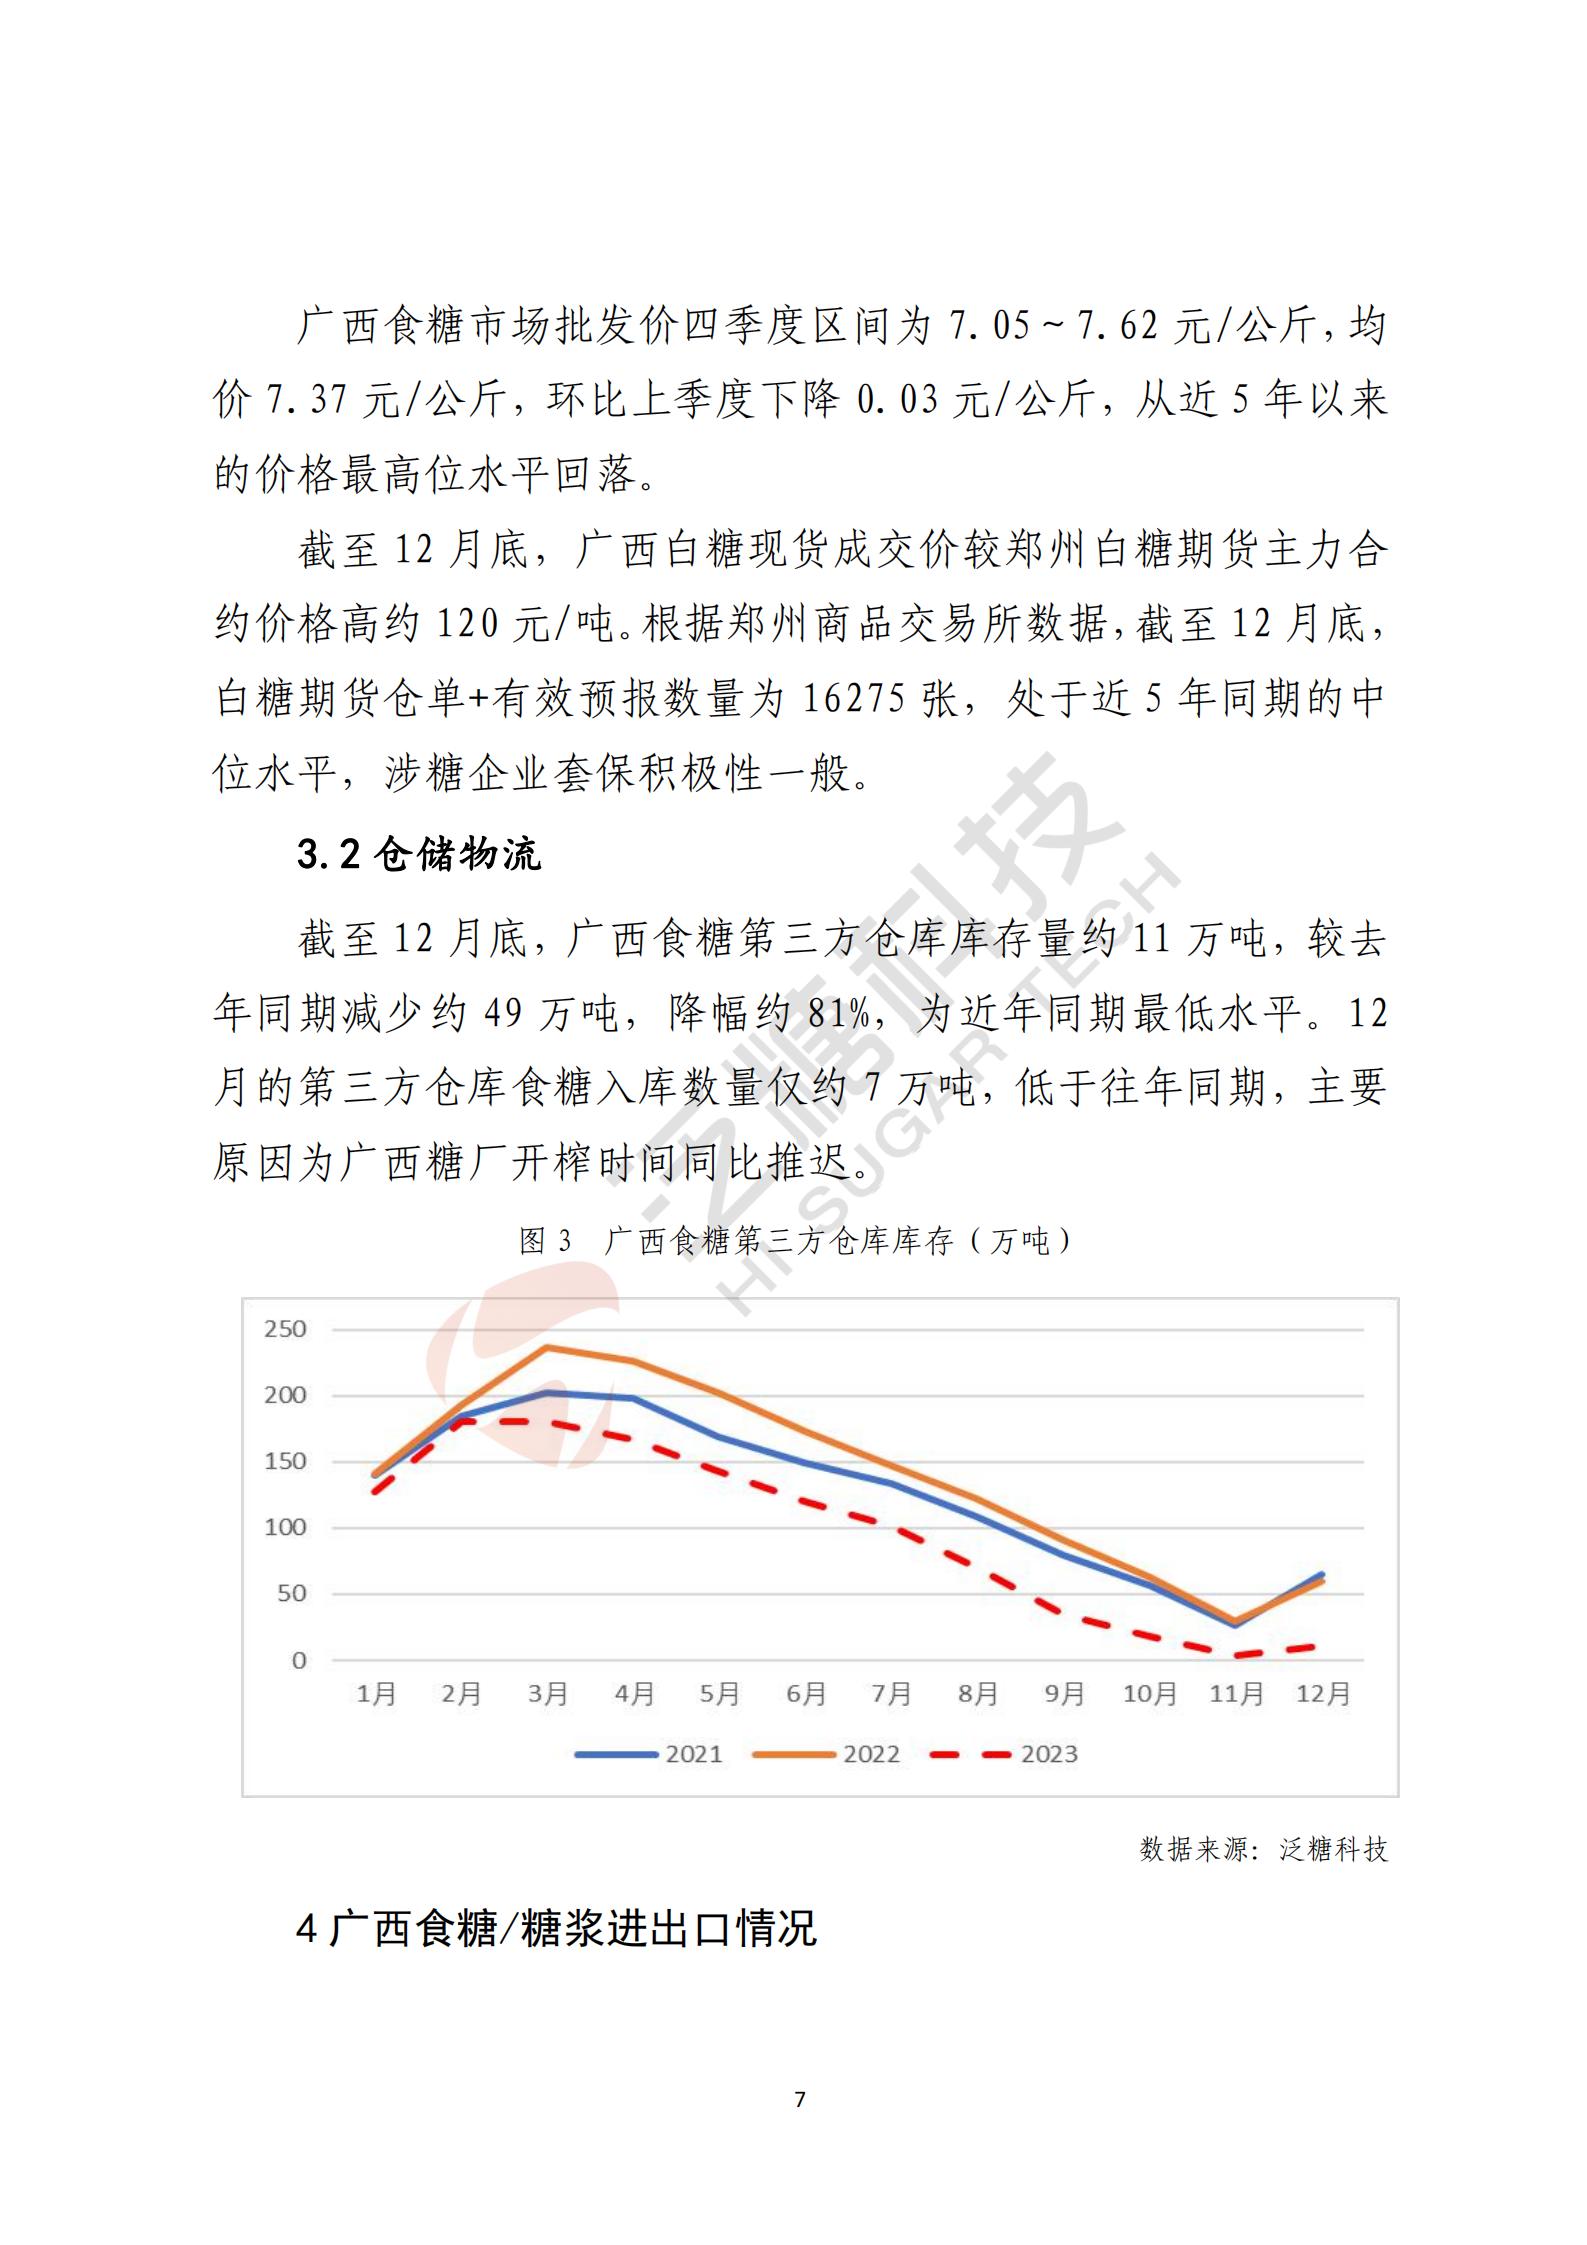 广西食糖产业损害监测预警分析报告2023年第四季度(简化版)(1)_07.jpg